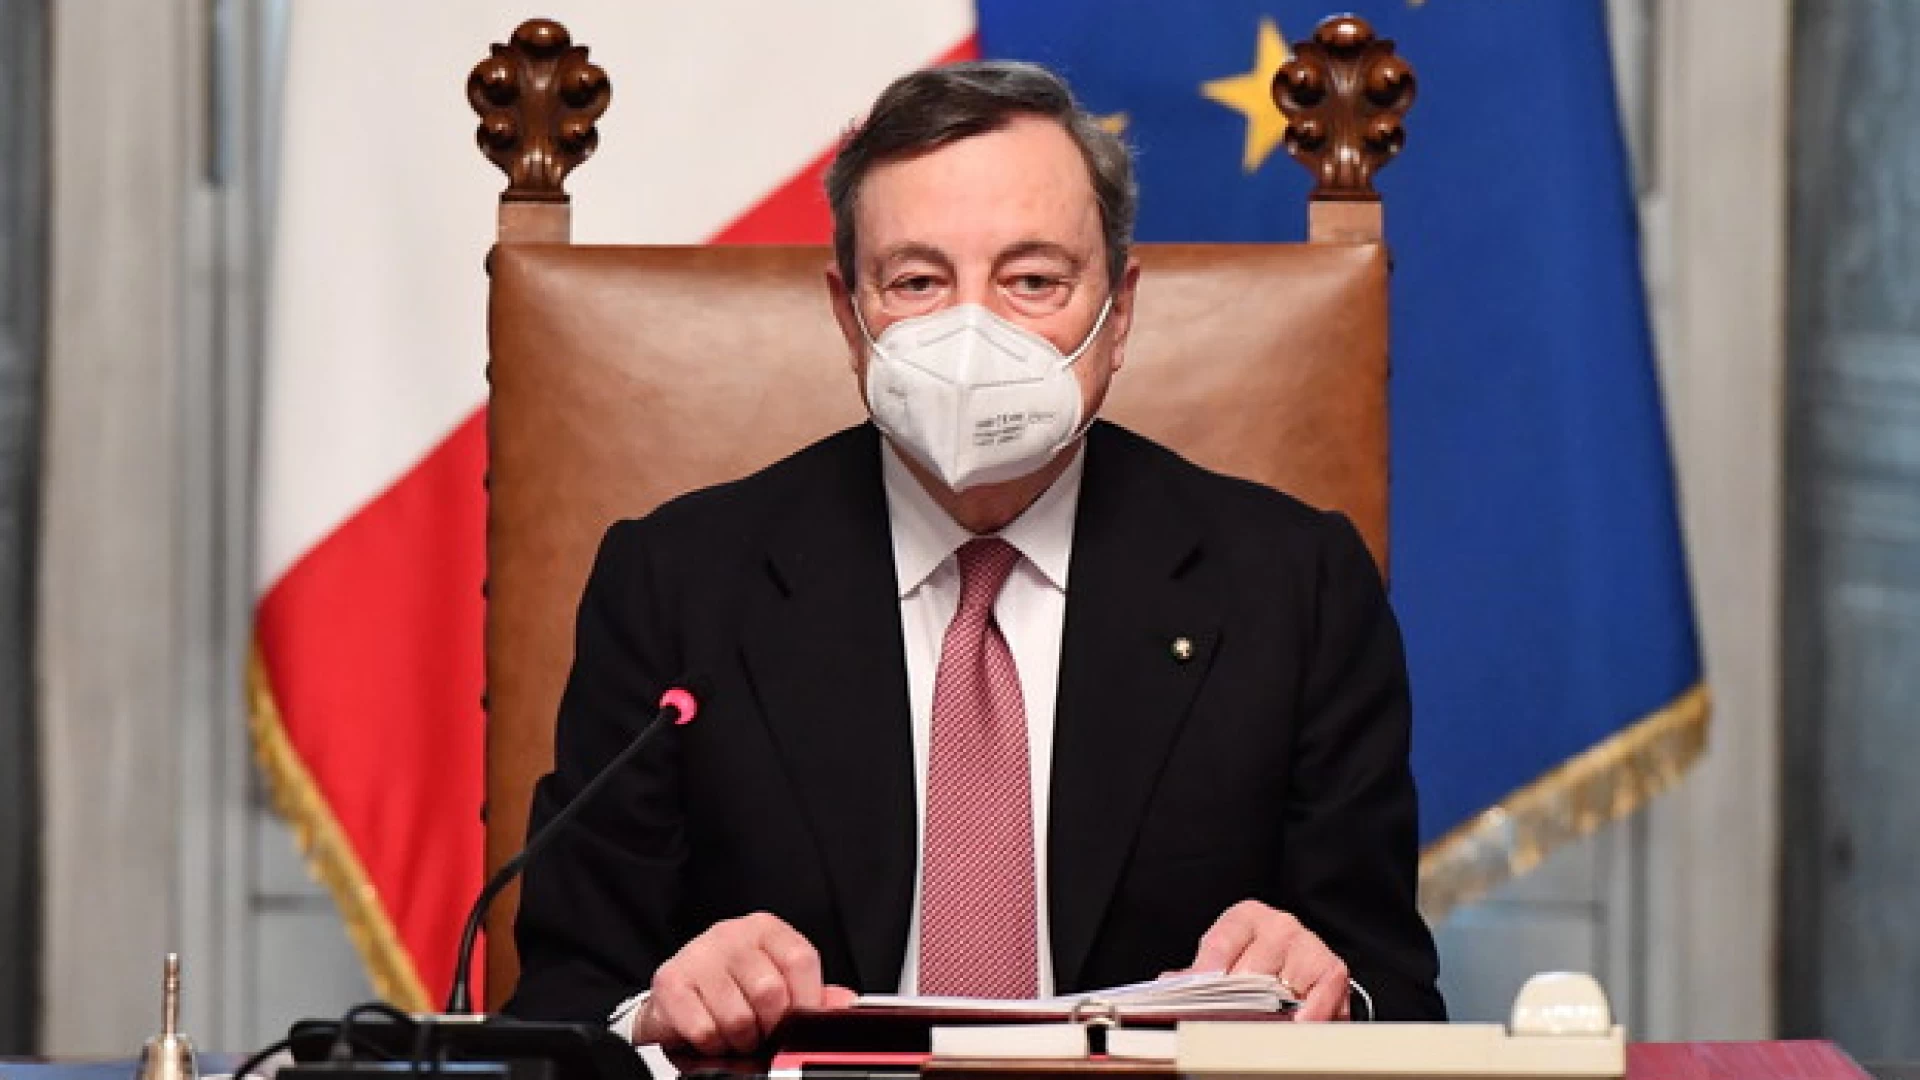 Nuovo Dpcm, Draghi firma il decreto ma non spiegherà le misure: in conferenza stampa i ministri Speranza e Gelmini